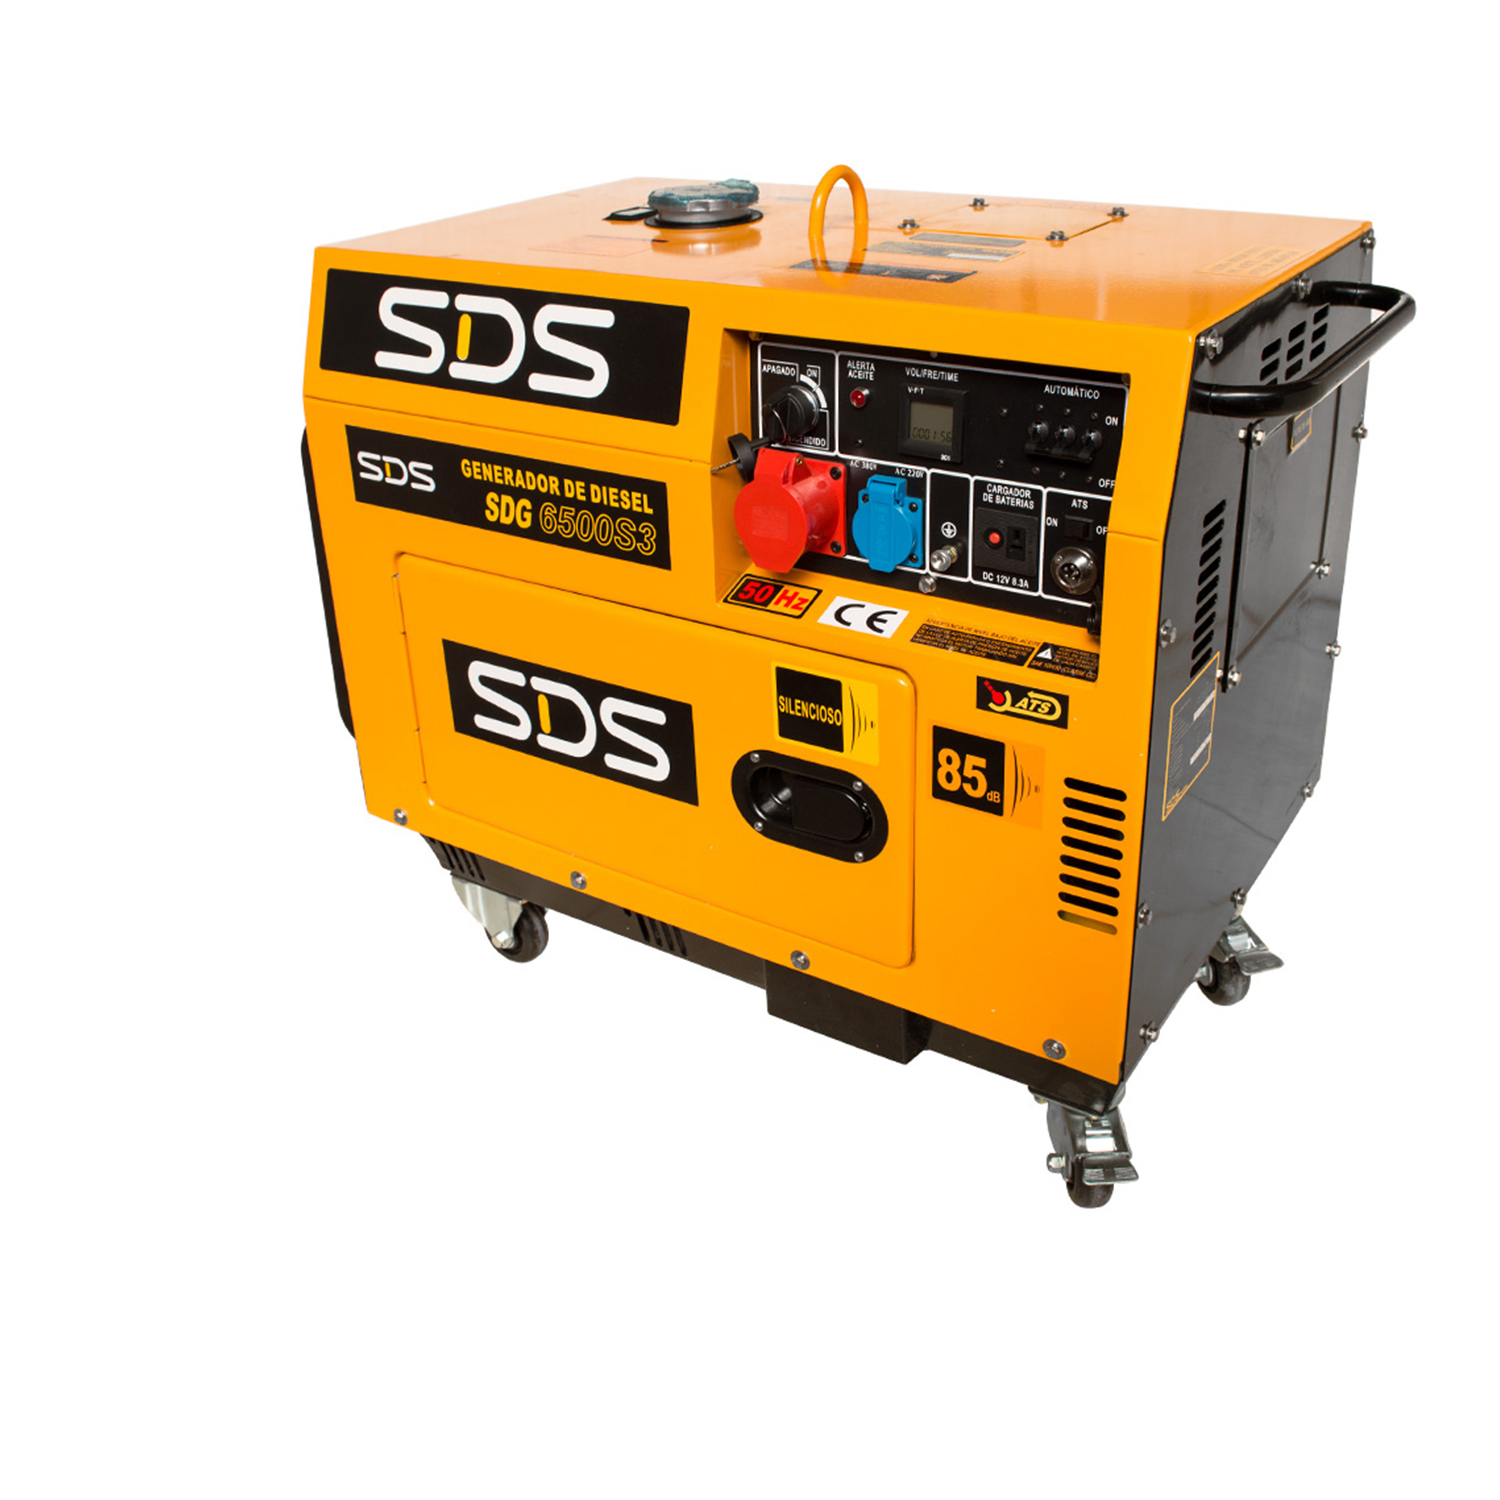 GENERADOR SDS DIESEL SDG6500S3 5,6 KW 380 V TRIFASICO Equisol Spa - Equpos  y Soluciones